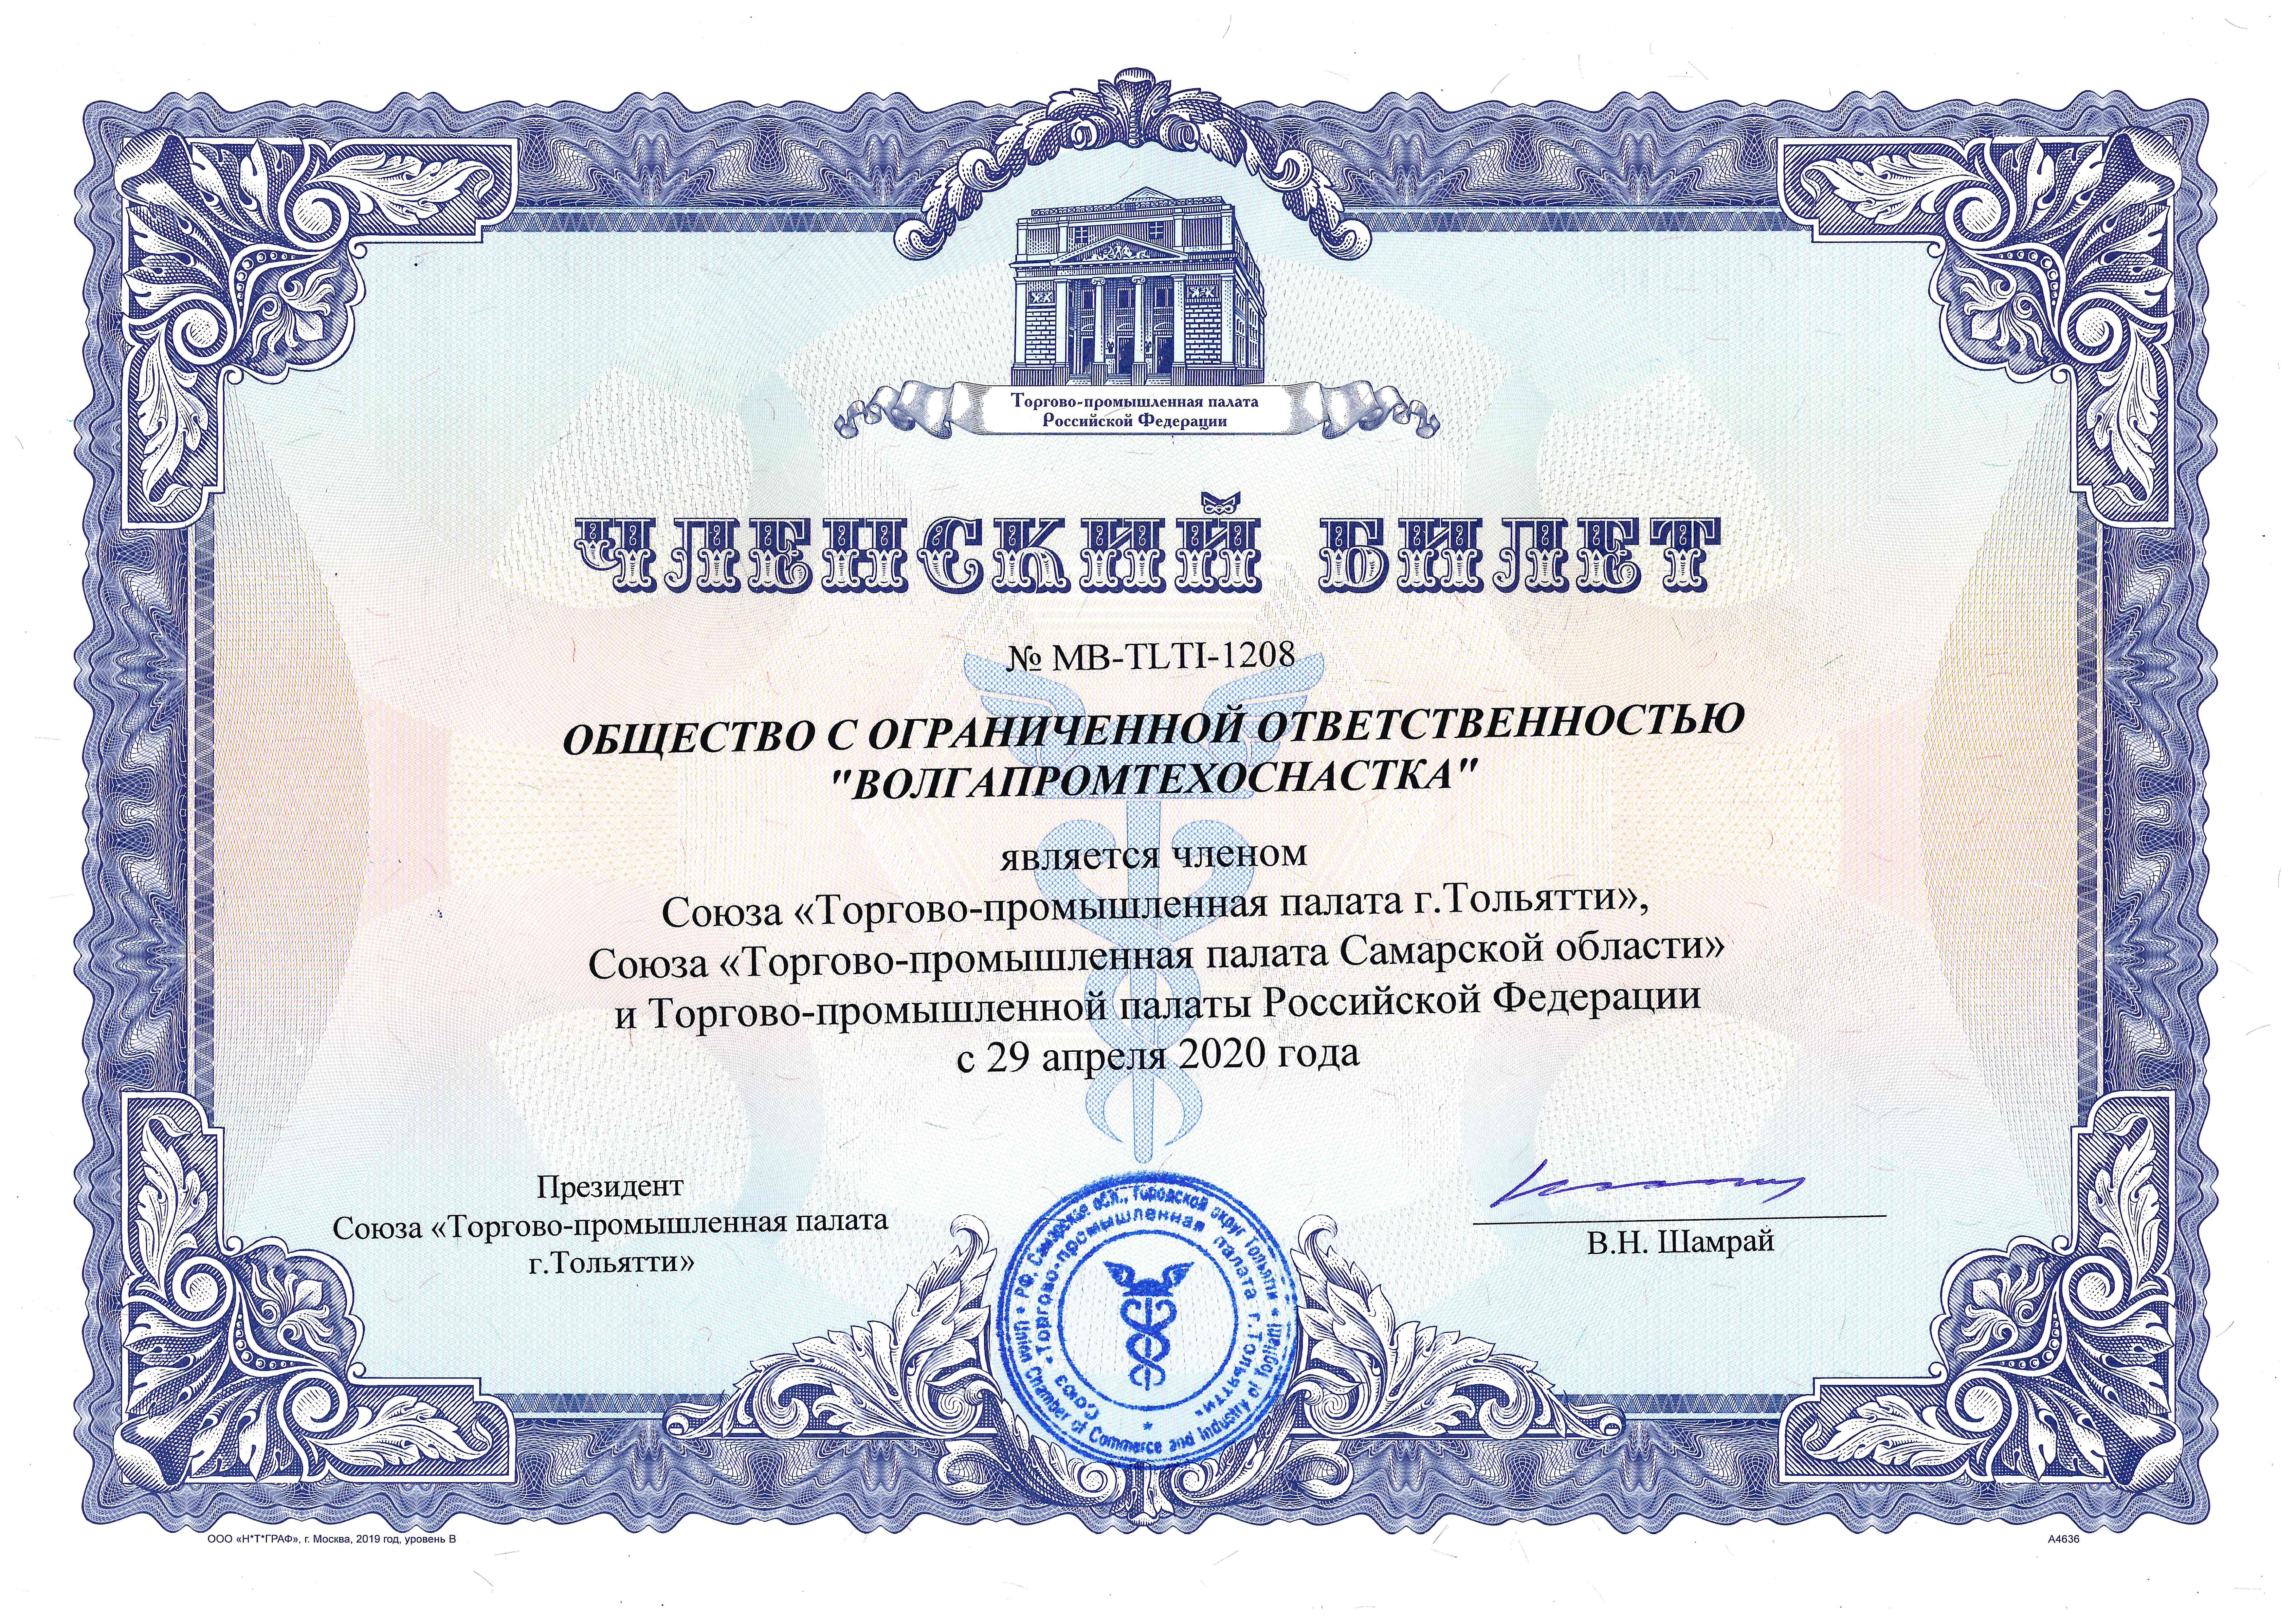 Компания ООО "Волгапромтехоснастка" стала членом Торгово-промышленной палаты Российской Федерации!